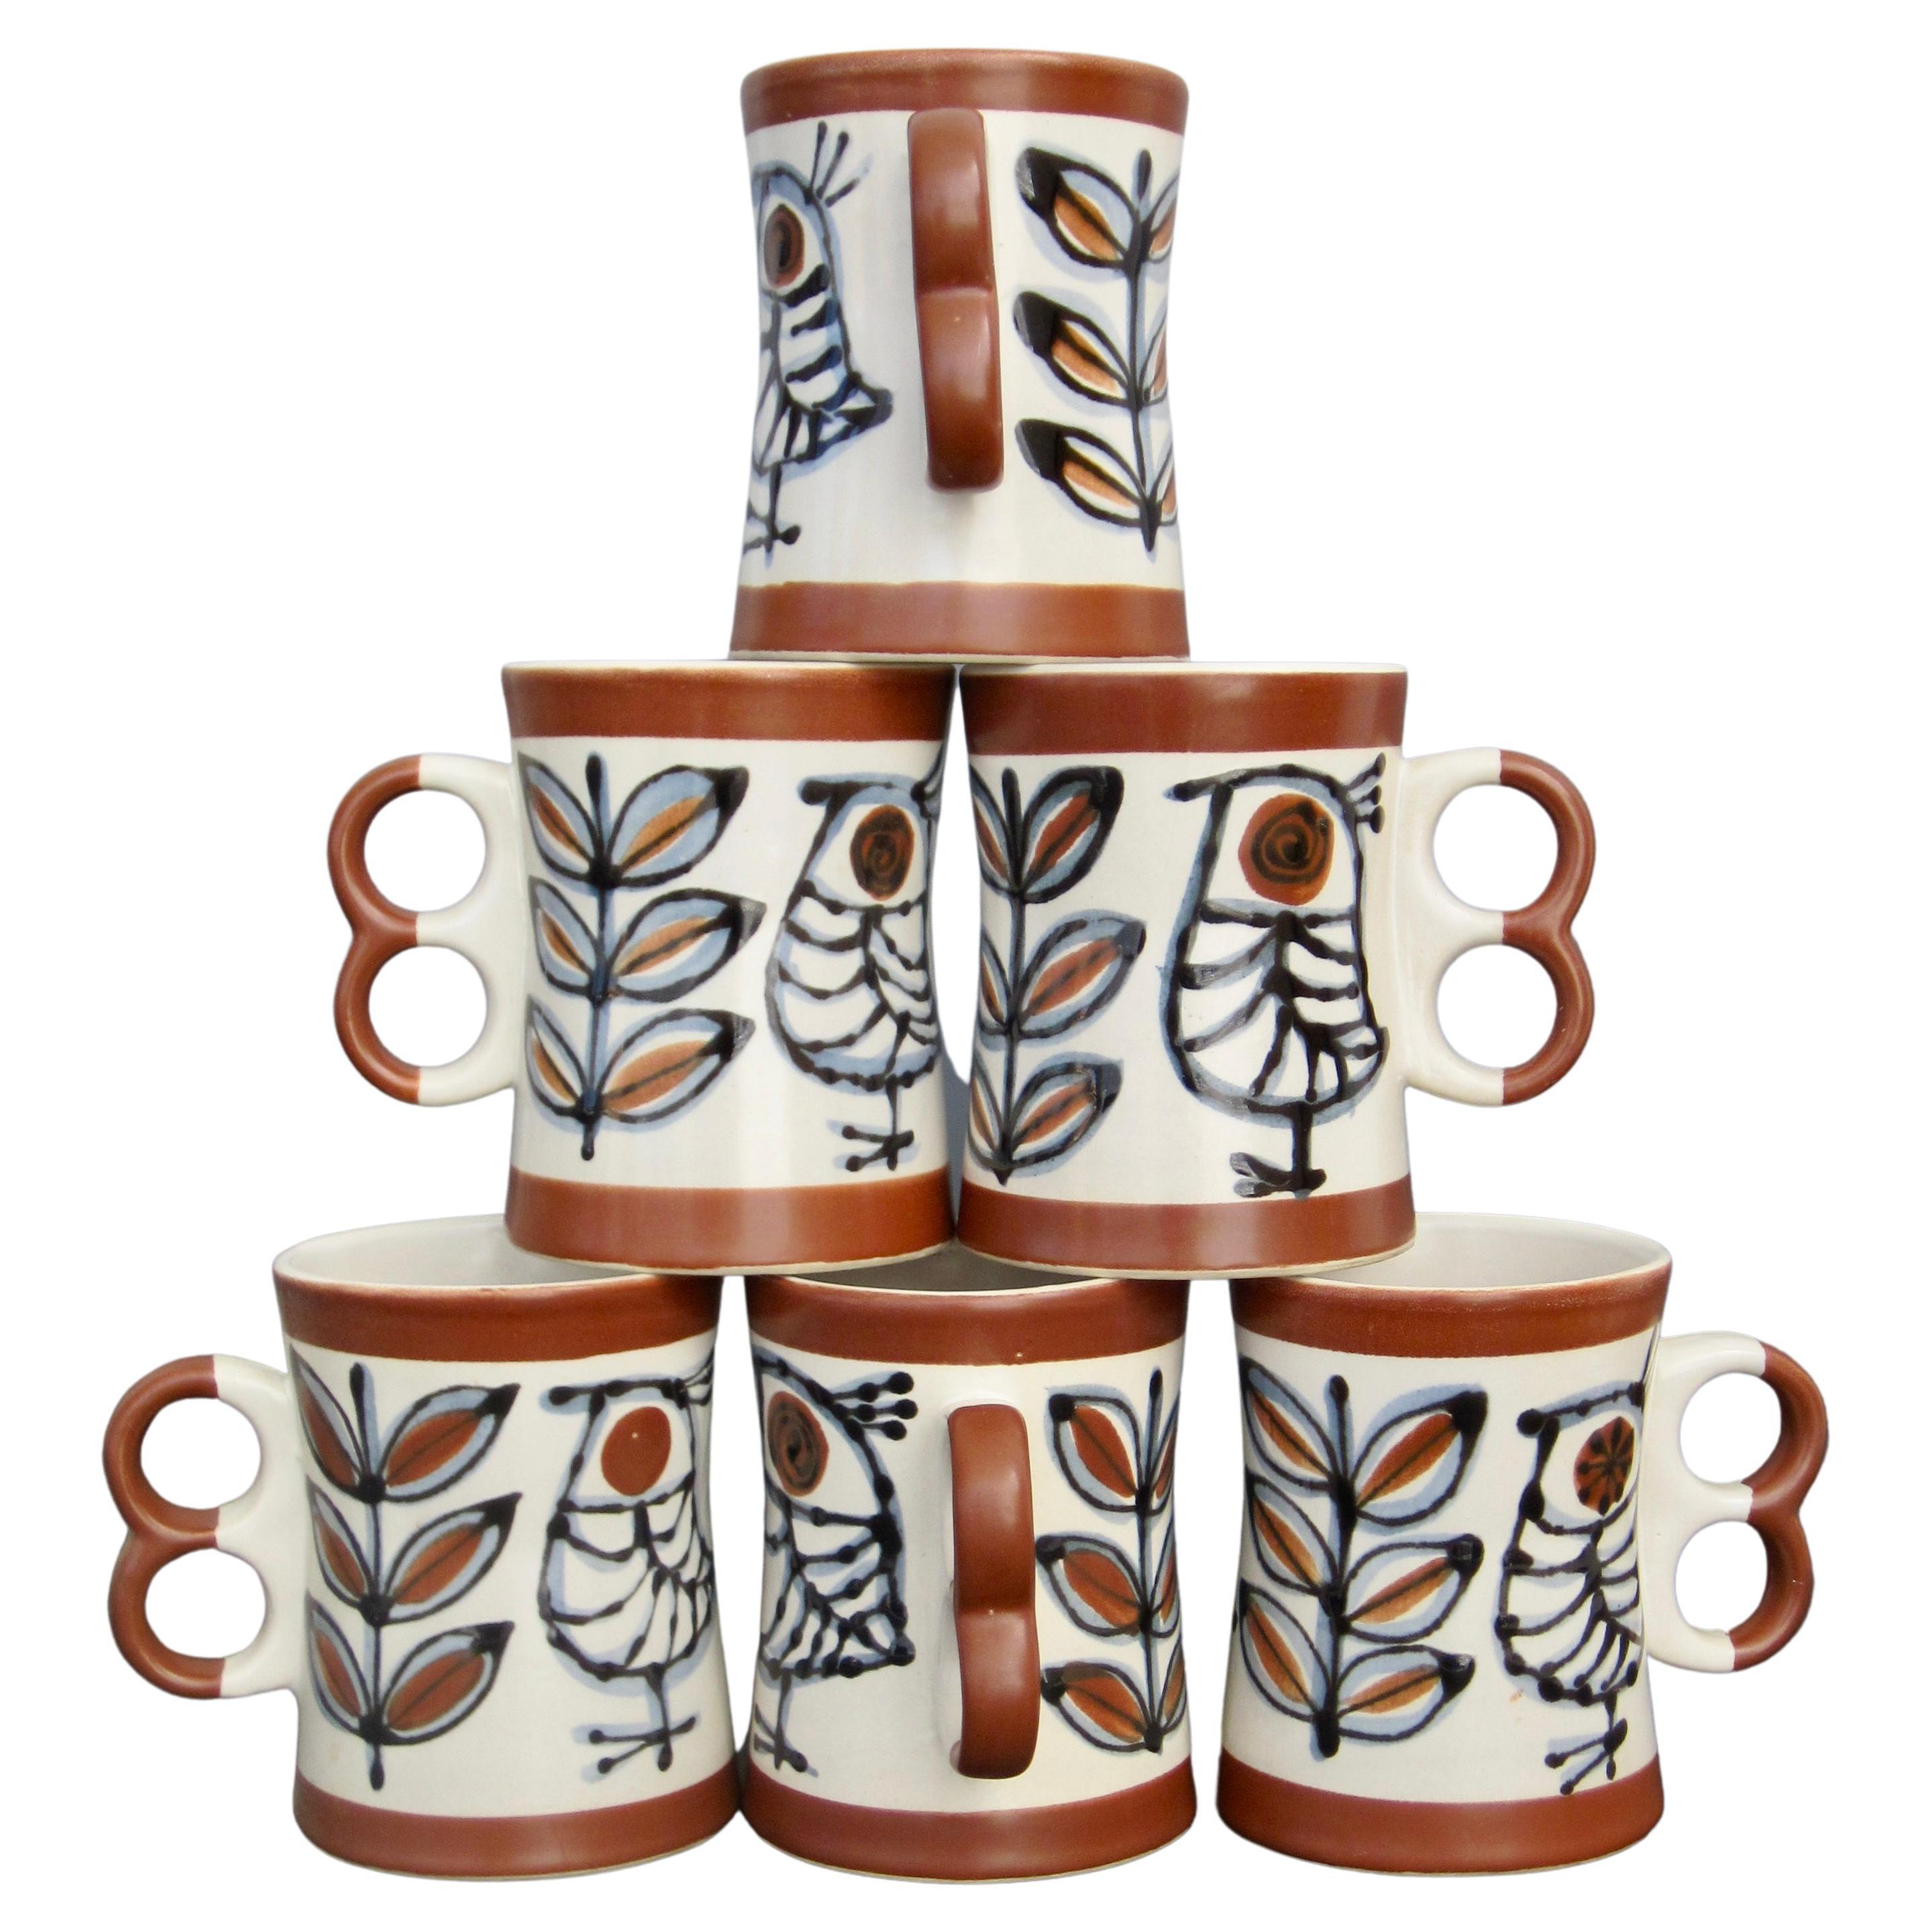 Louis Vuitton - Coffee and Tea set - Porcelain - Catawiki